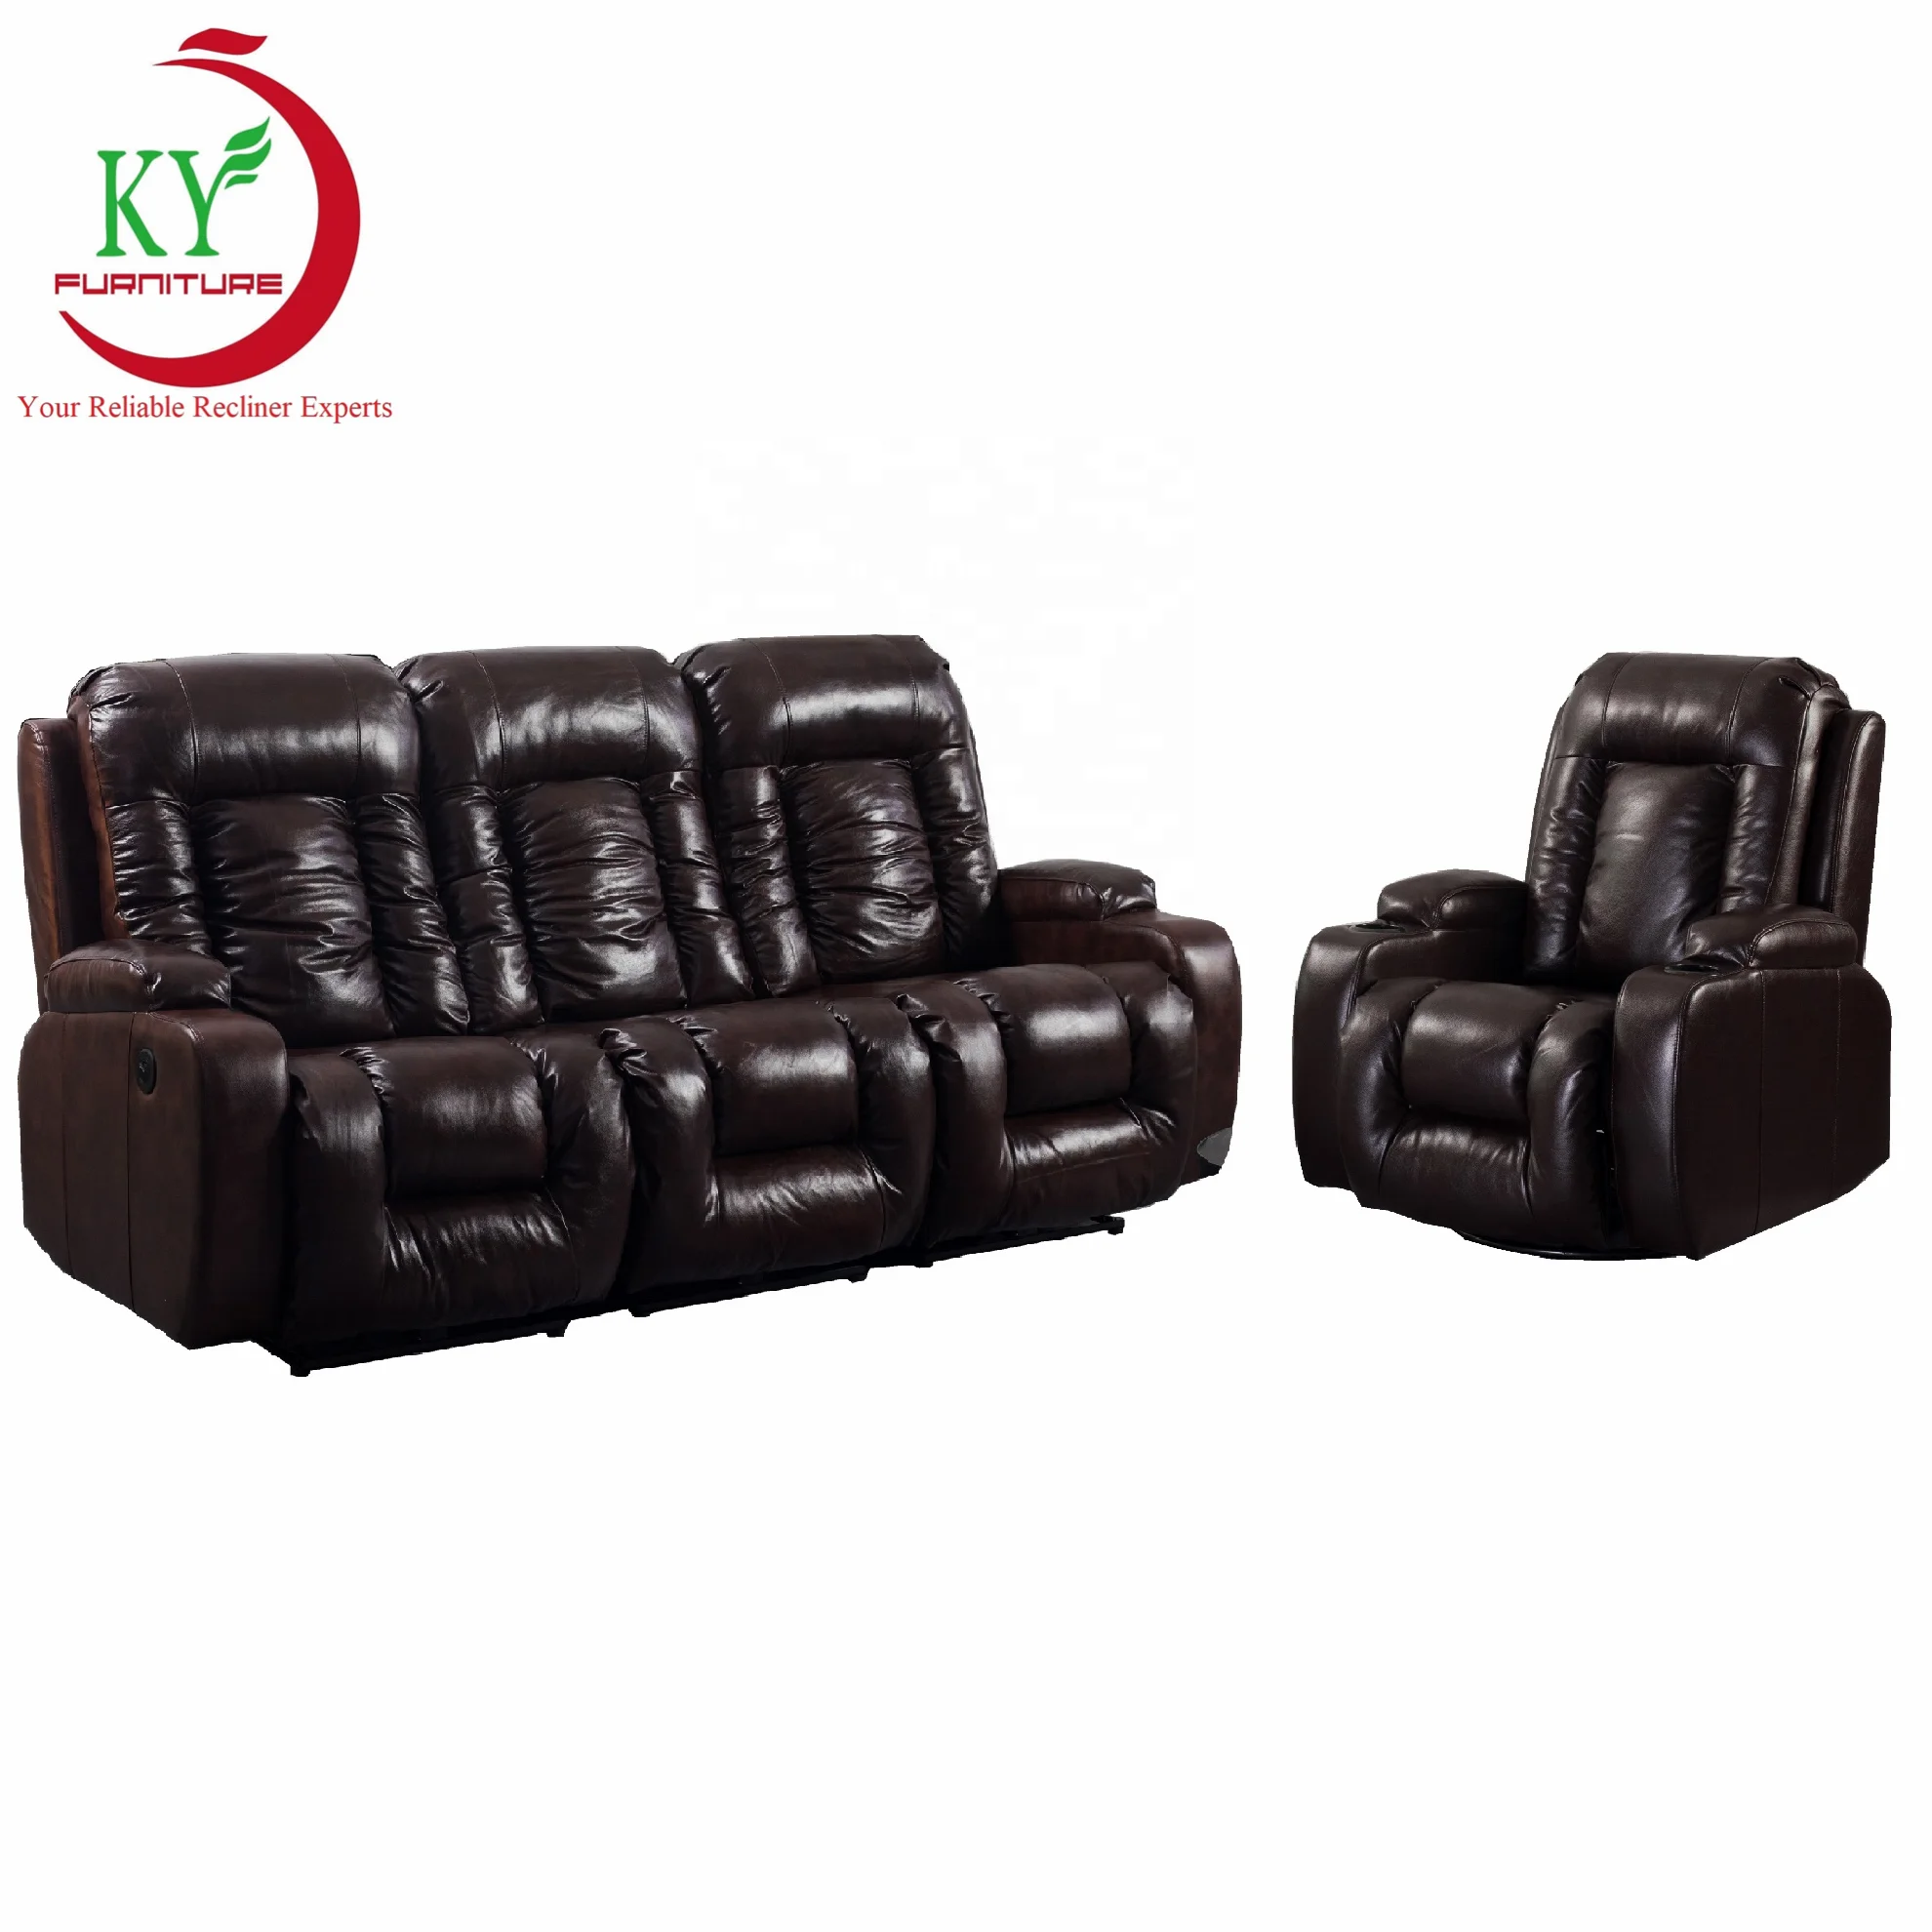 

JKY Furniture Living Room Modern Leather Recliner Sofa Set 3+2+1